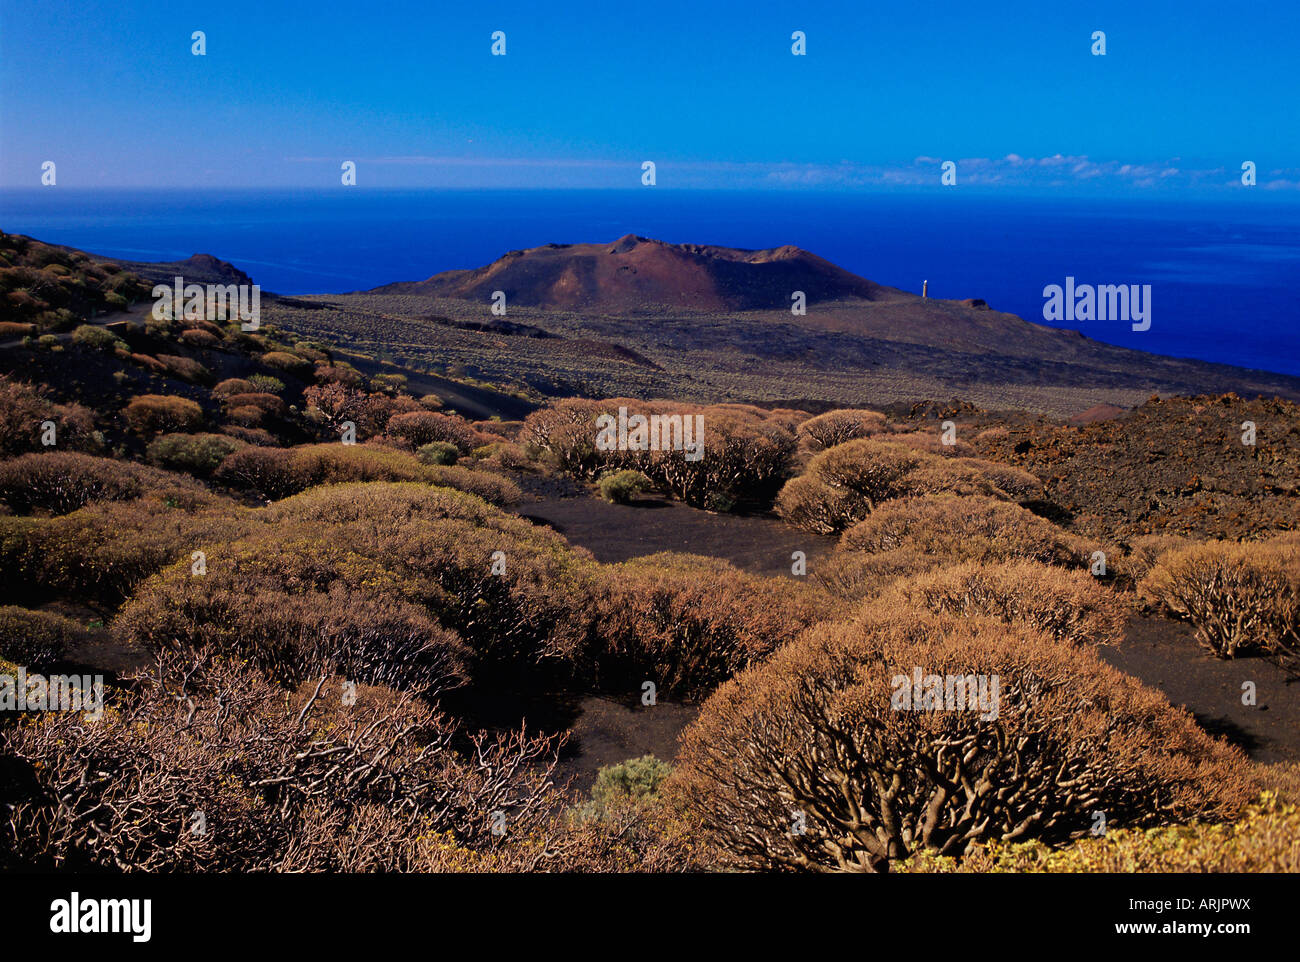 Pflanzen und ein Vulkan Kegel von La Dehesa mit Atlantischen Ozean im Hintergrund betrachtet, El Hierro, Kanarische Inseln, Spanien, Europa Stockfoto